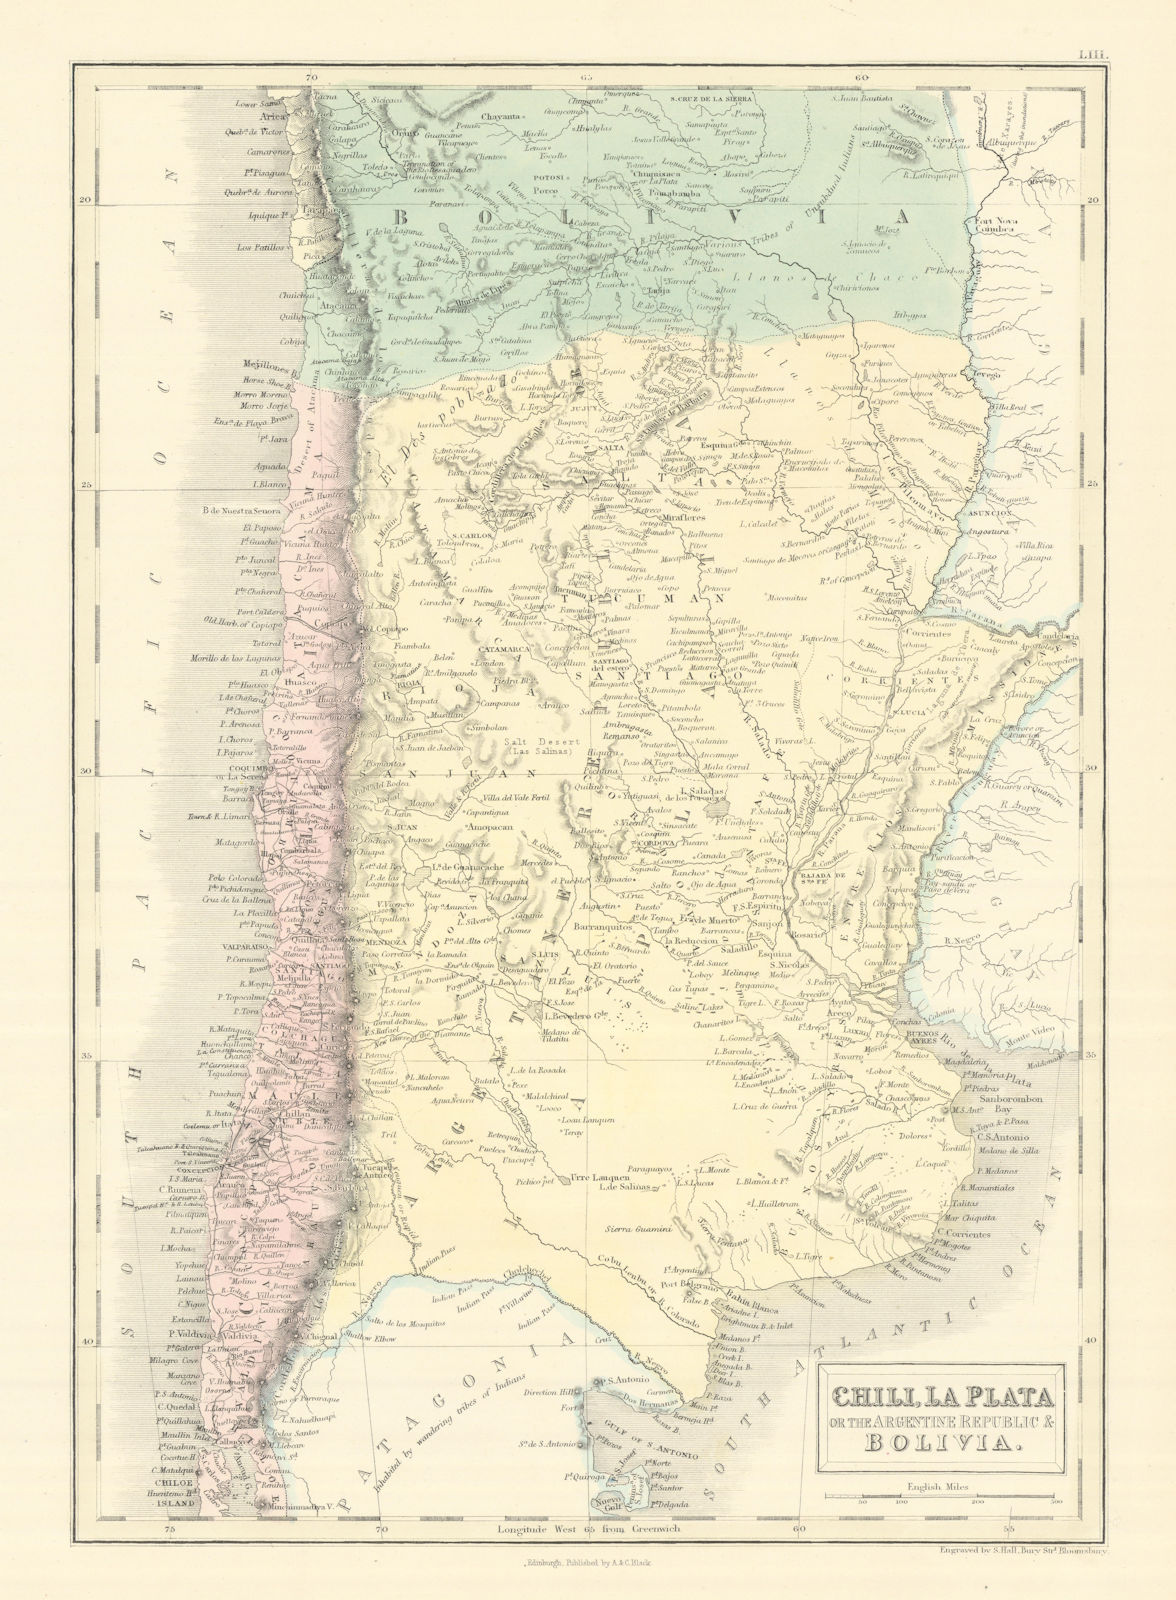 Chili La Plata Argentine Rep. Argentina Bolivia w/Litoral. SIDNEY HALL 1854 map